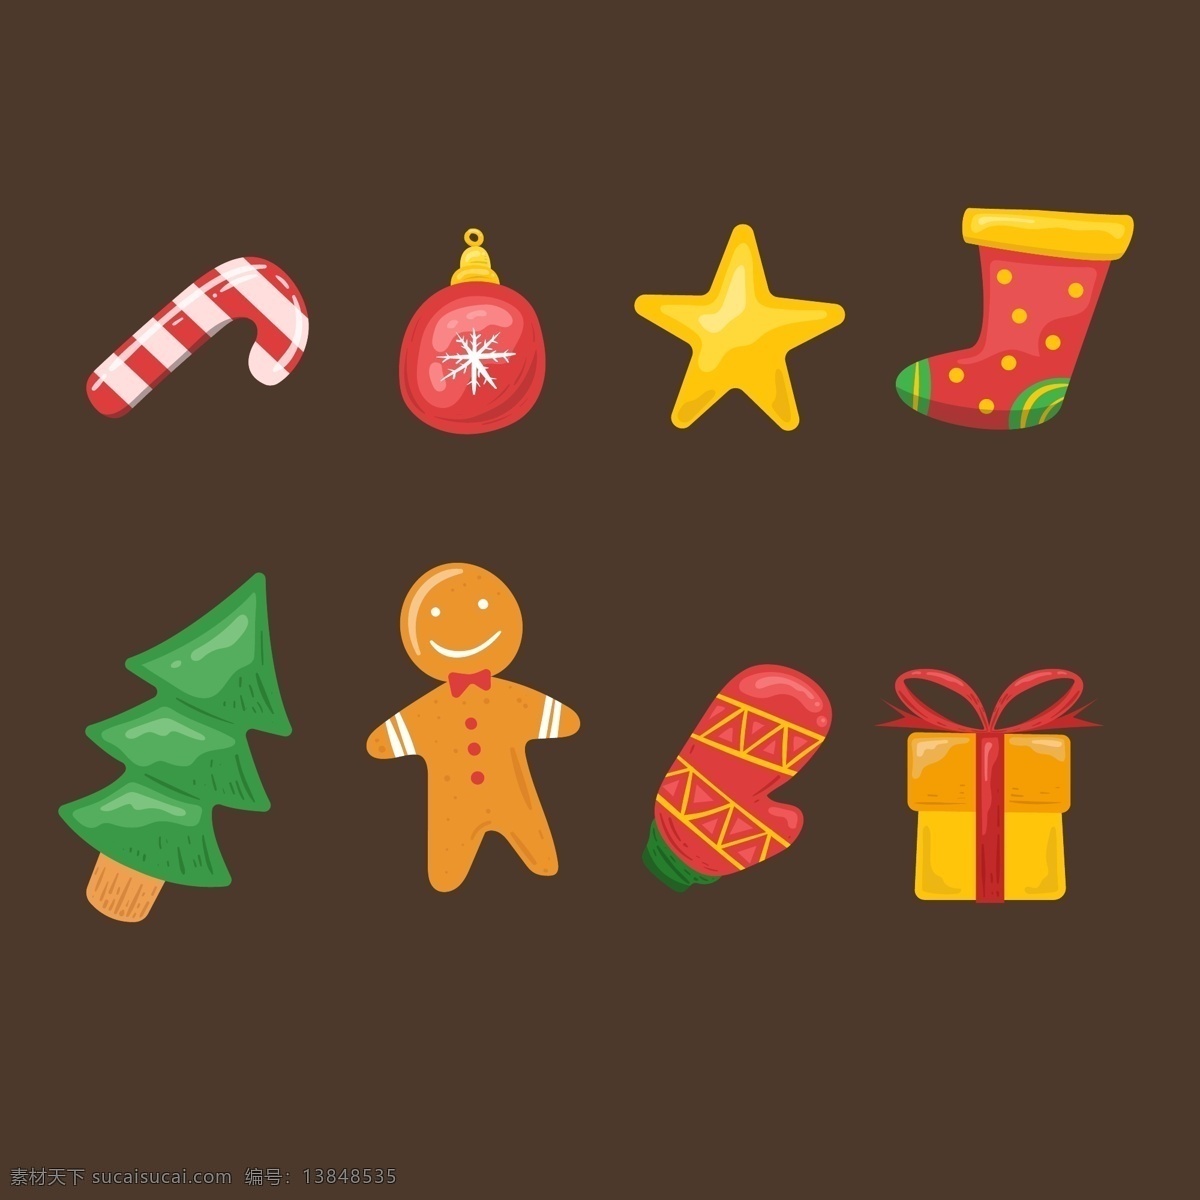 彩色 圣诞 元素 矢量 礼物 星星 圣诞树 圣诞节 设计素材 糖果 手套 圣诞袜 姜饼人